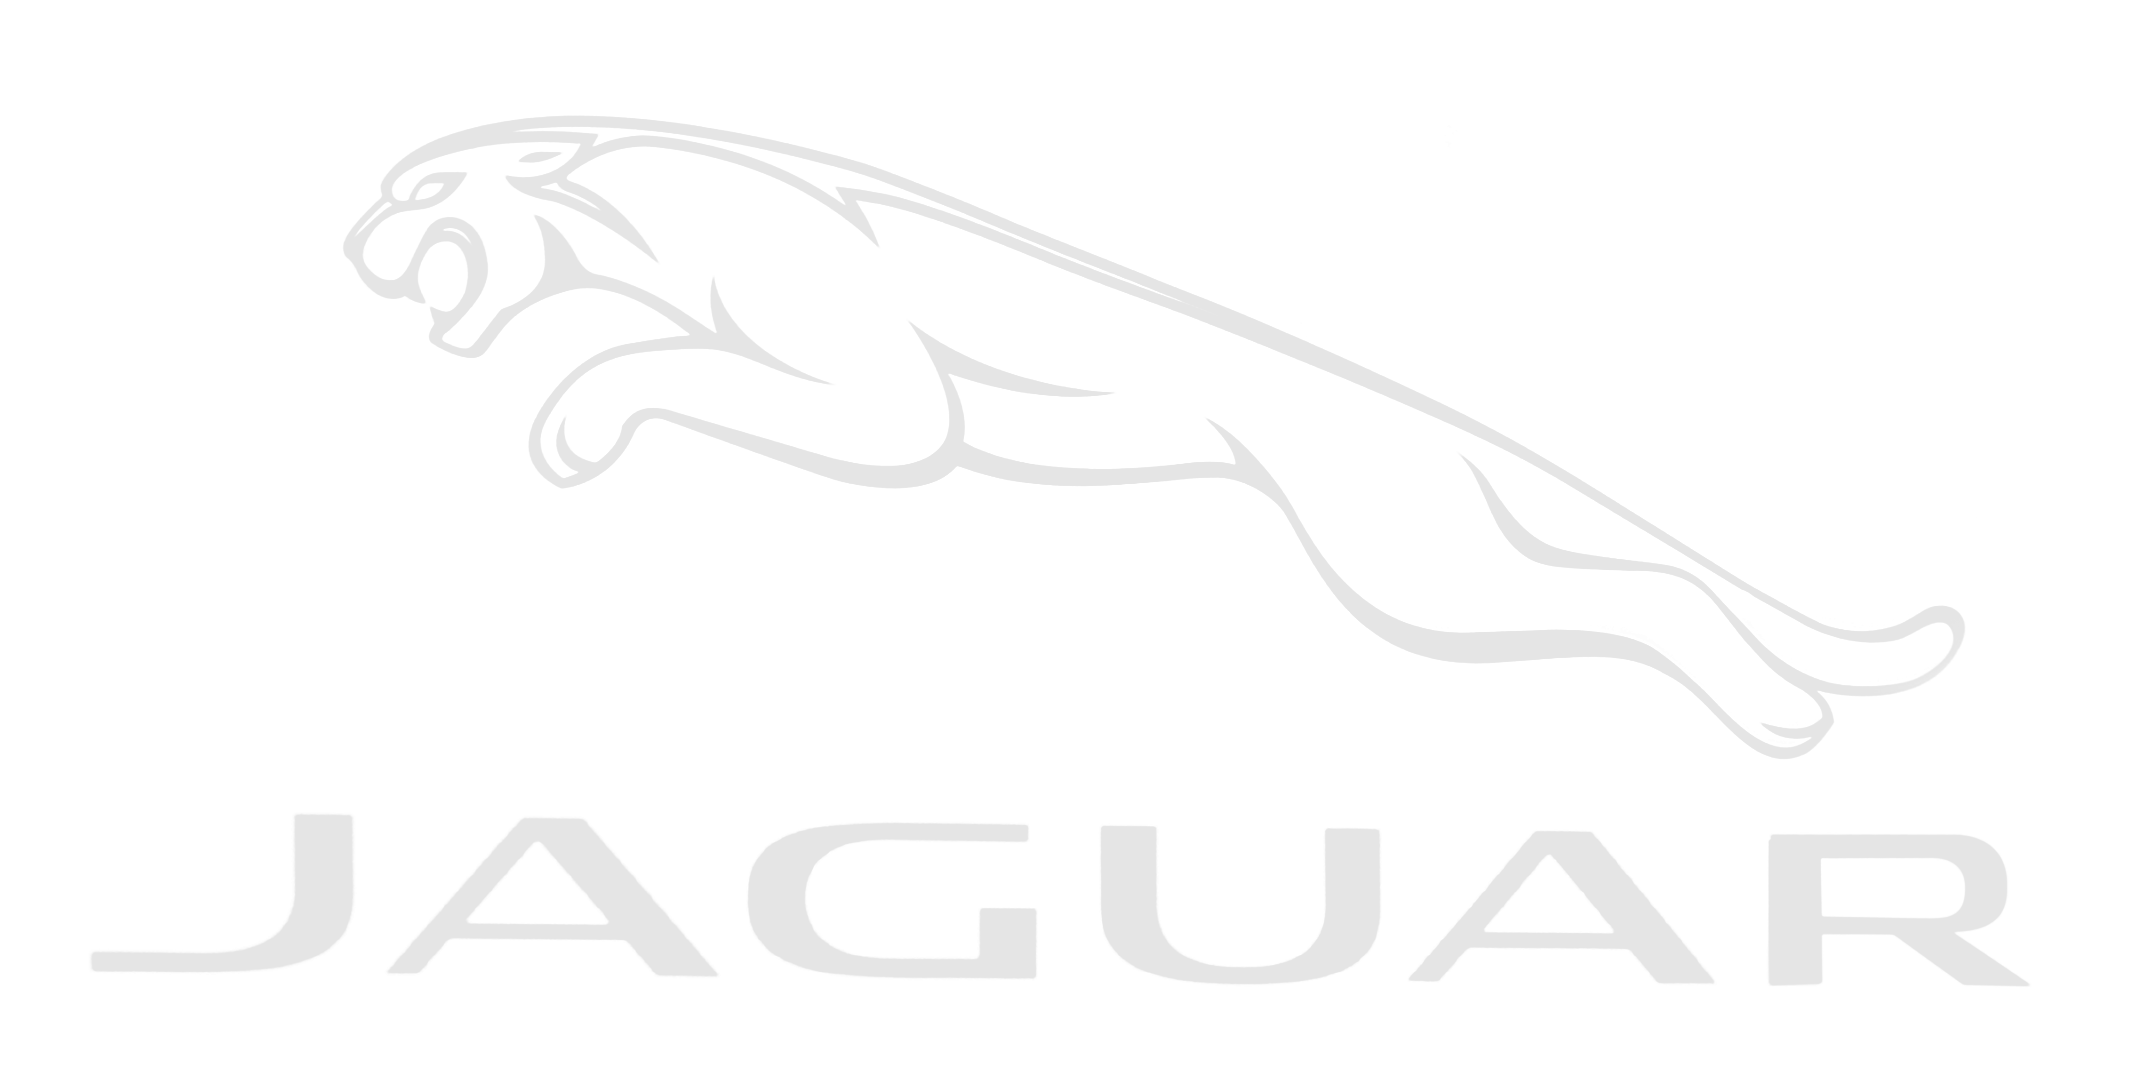 Jaguar-logo-2012-outline.png